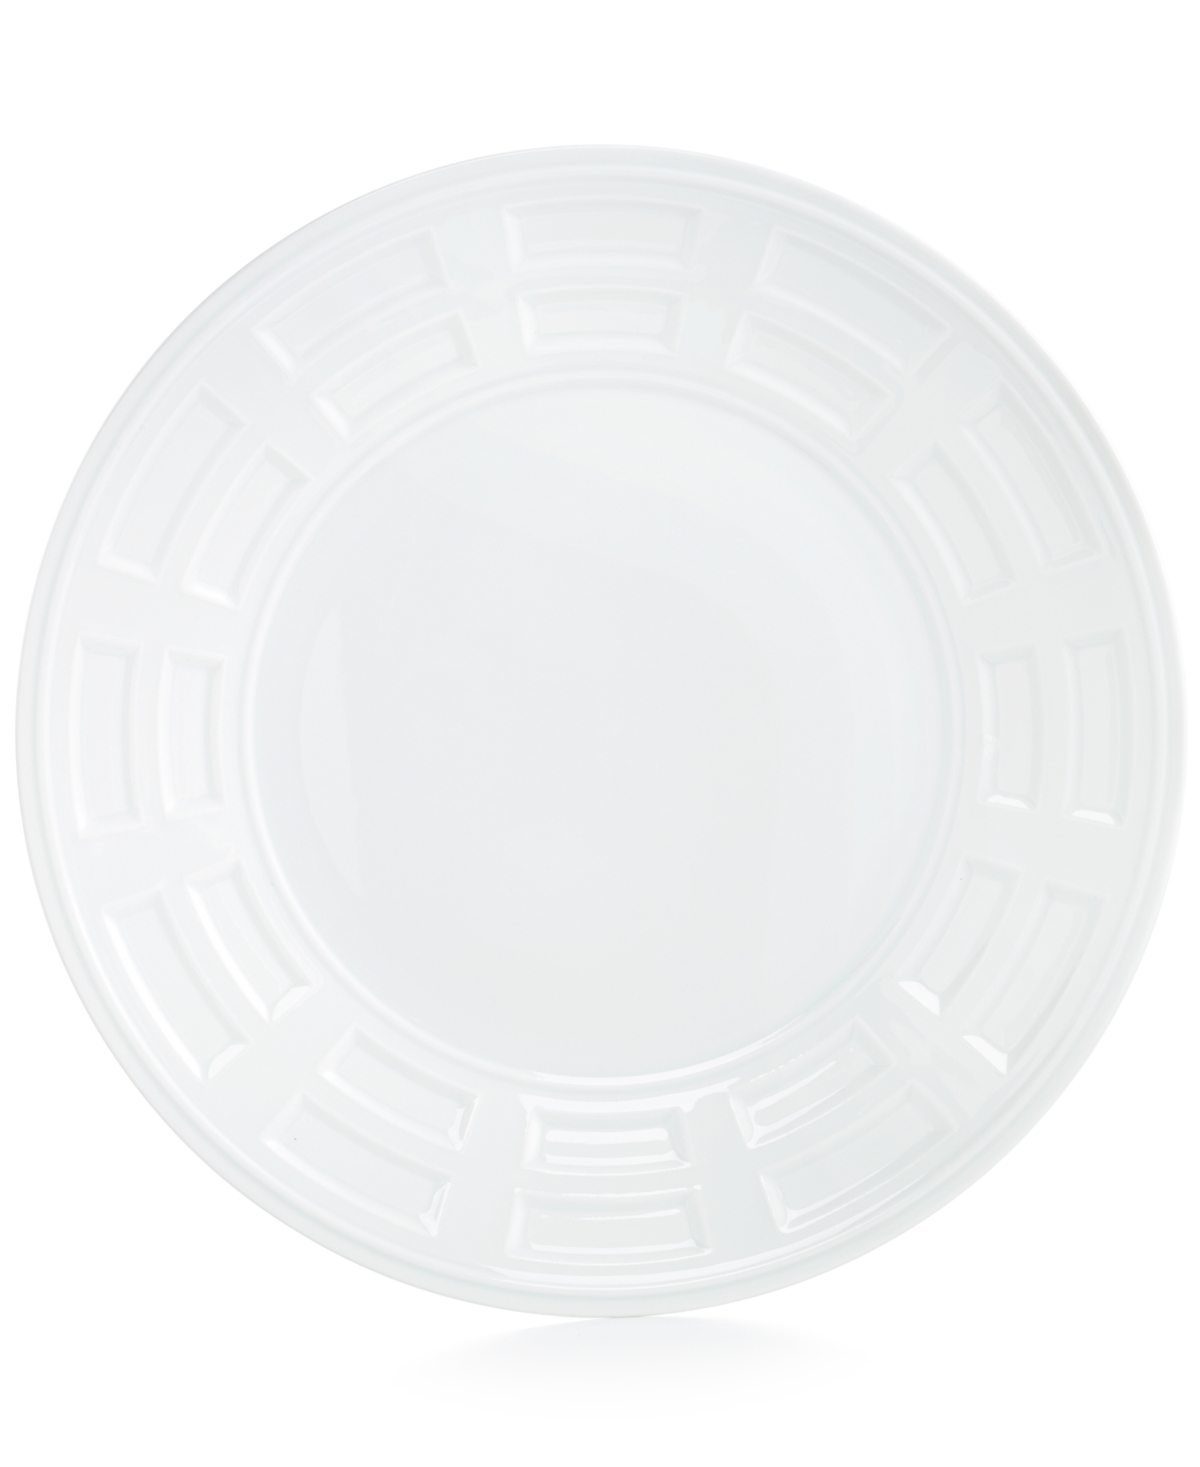 Bernardaud Naxos Dinner Plate, 10.5